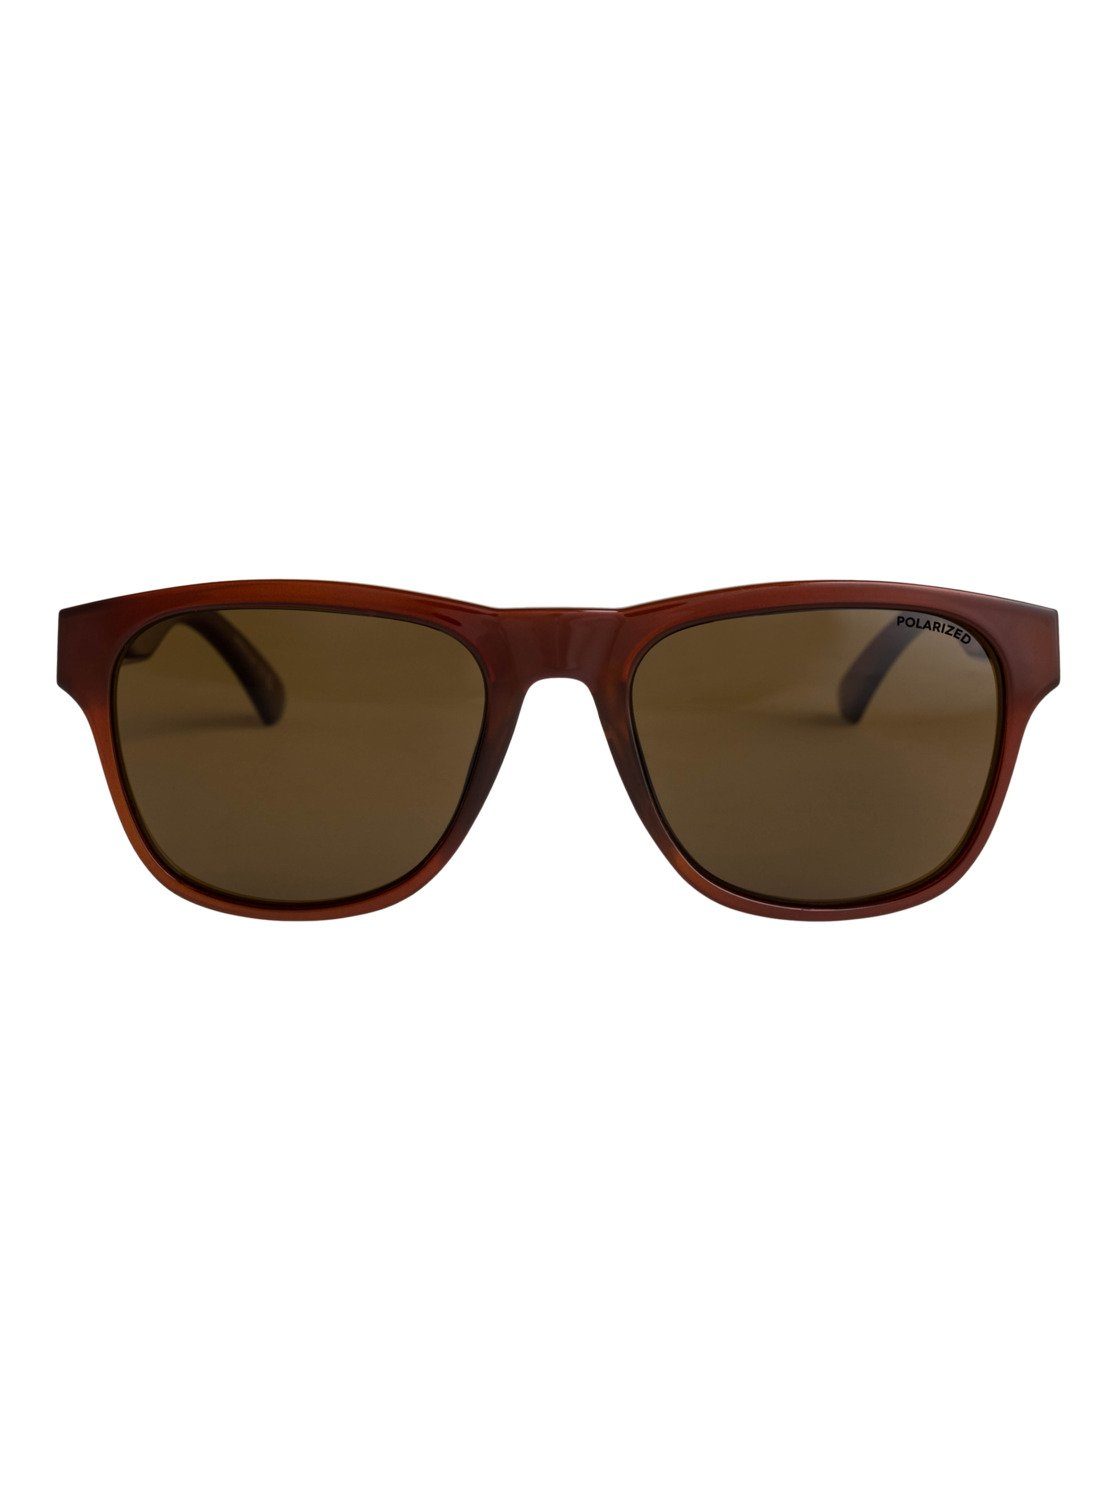 Sonnenbrille Quiksilver Tagger Polarized Stone/Brown Plz